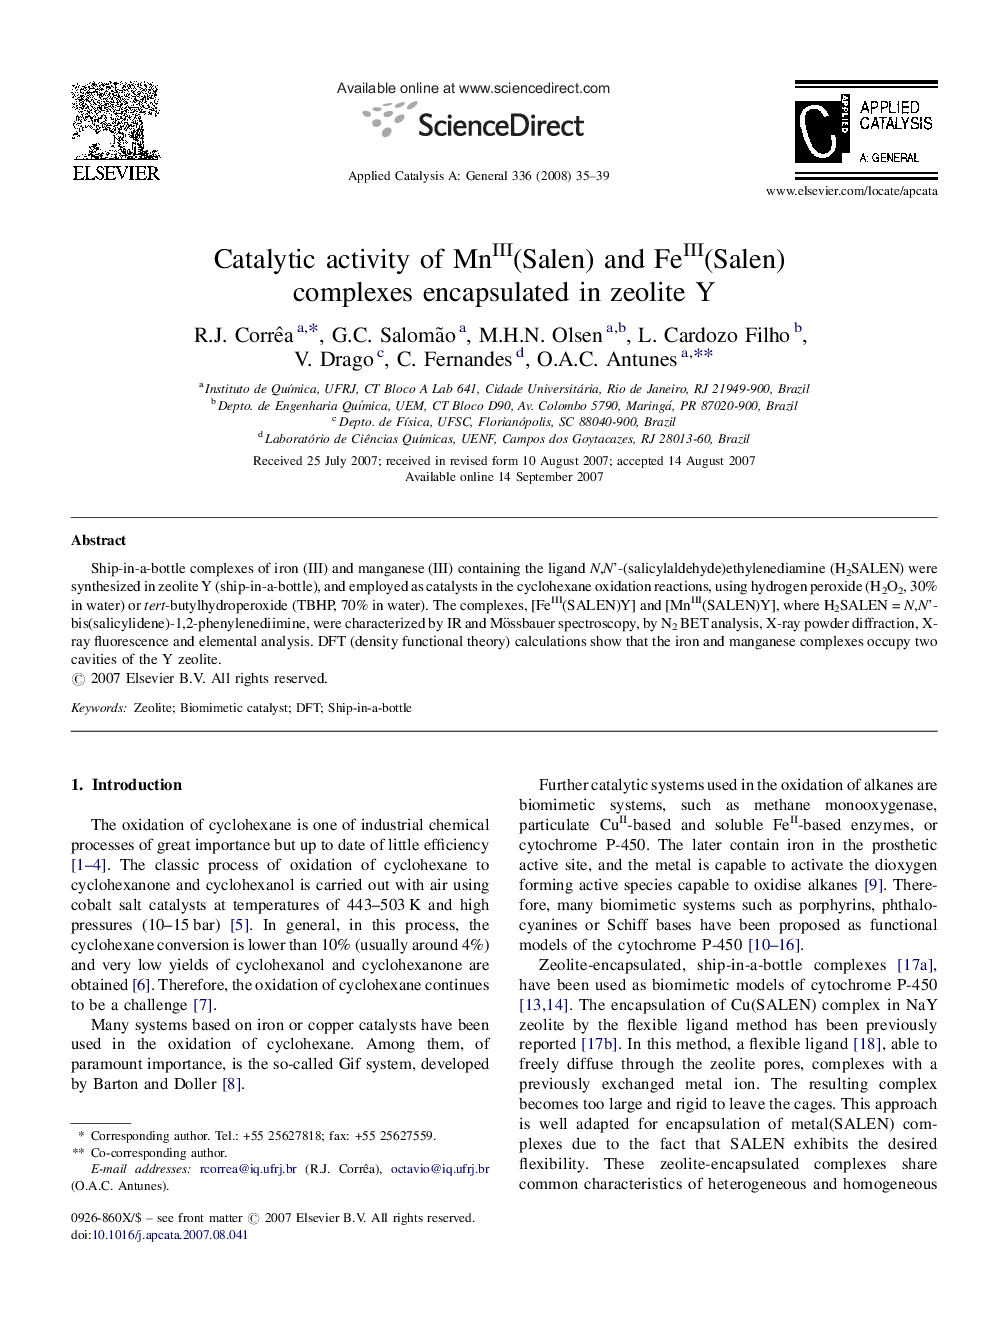 Catalytic activity of MnIII(Salen) and FeIII(Salen) complexes encapsulated in zeolite Y